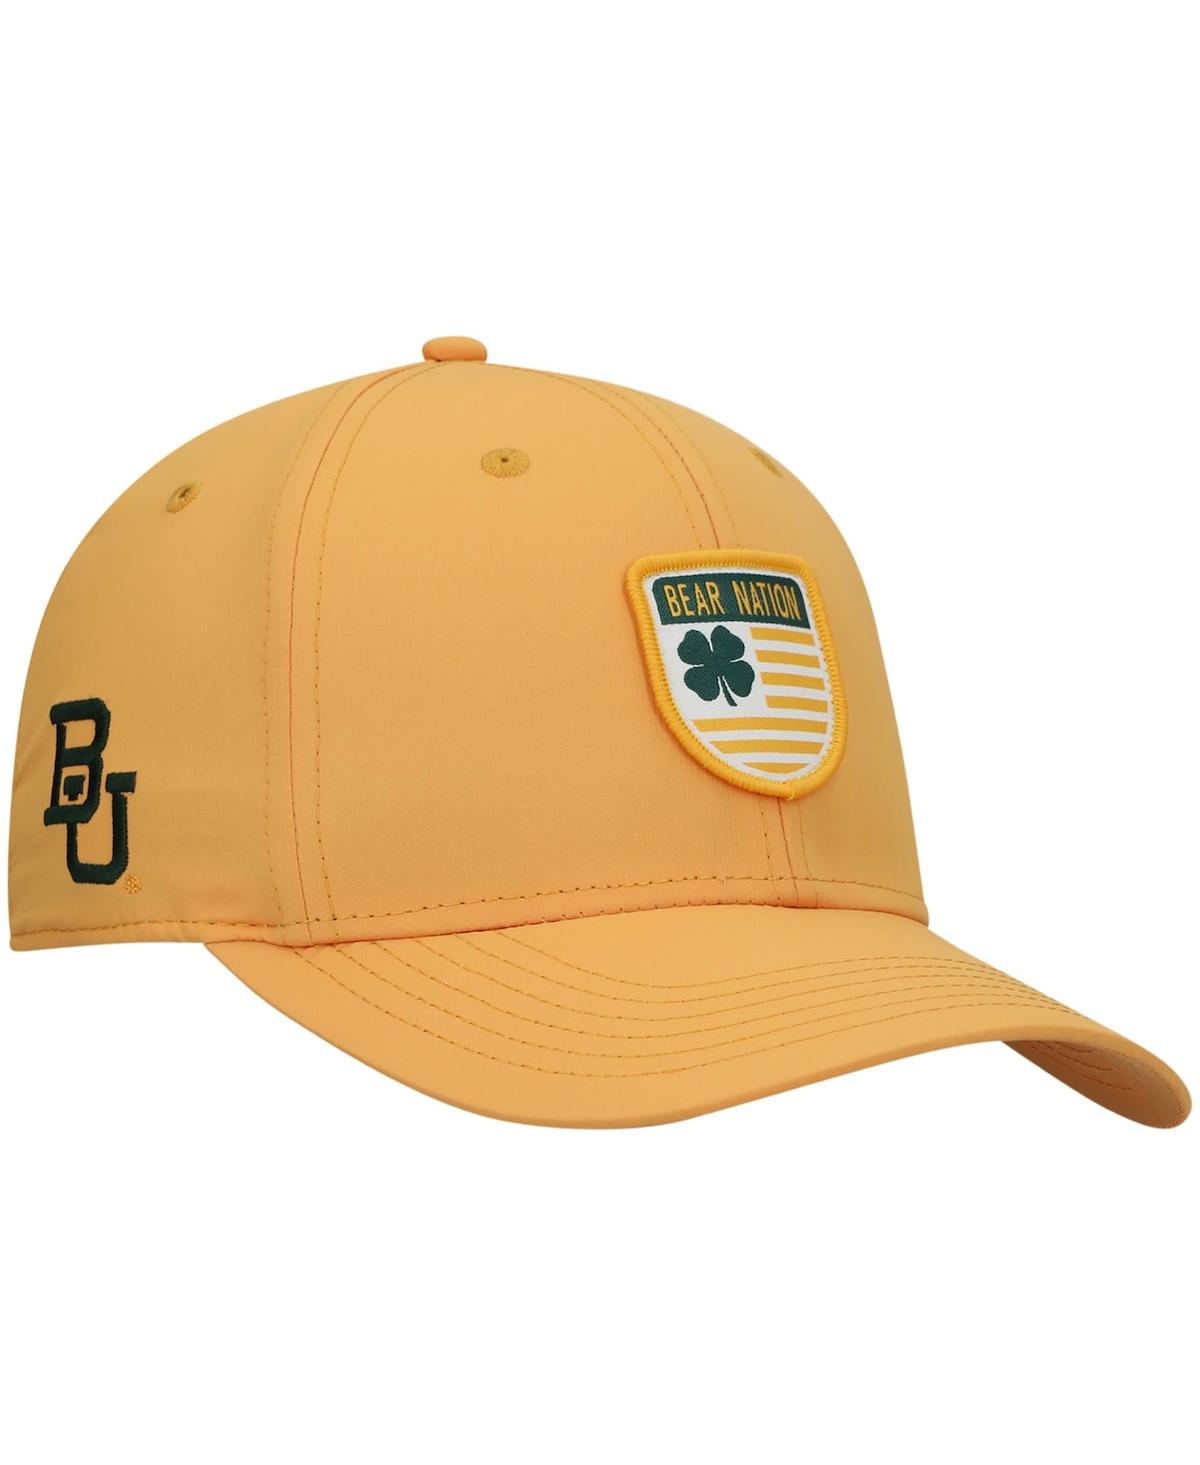 Black Clover Men's Gold Baylor Bears Nation Shield Snapback Hat